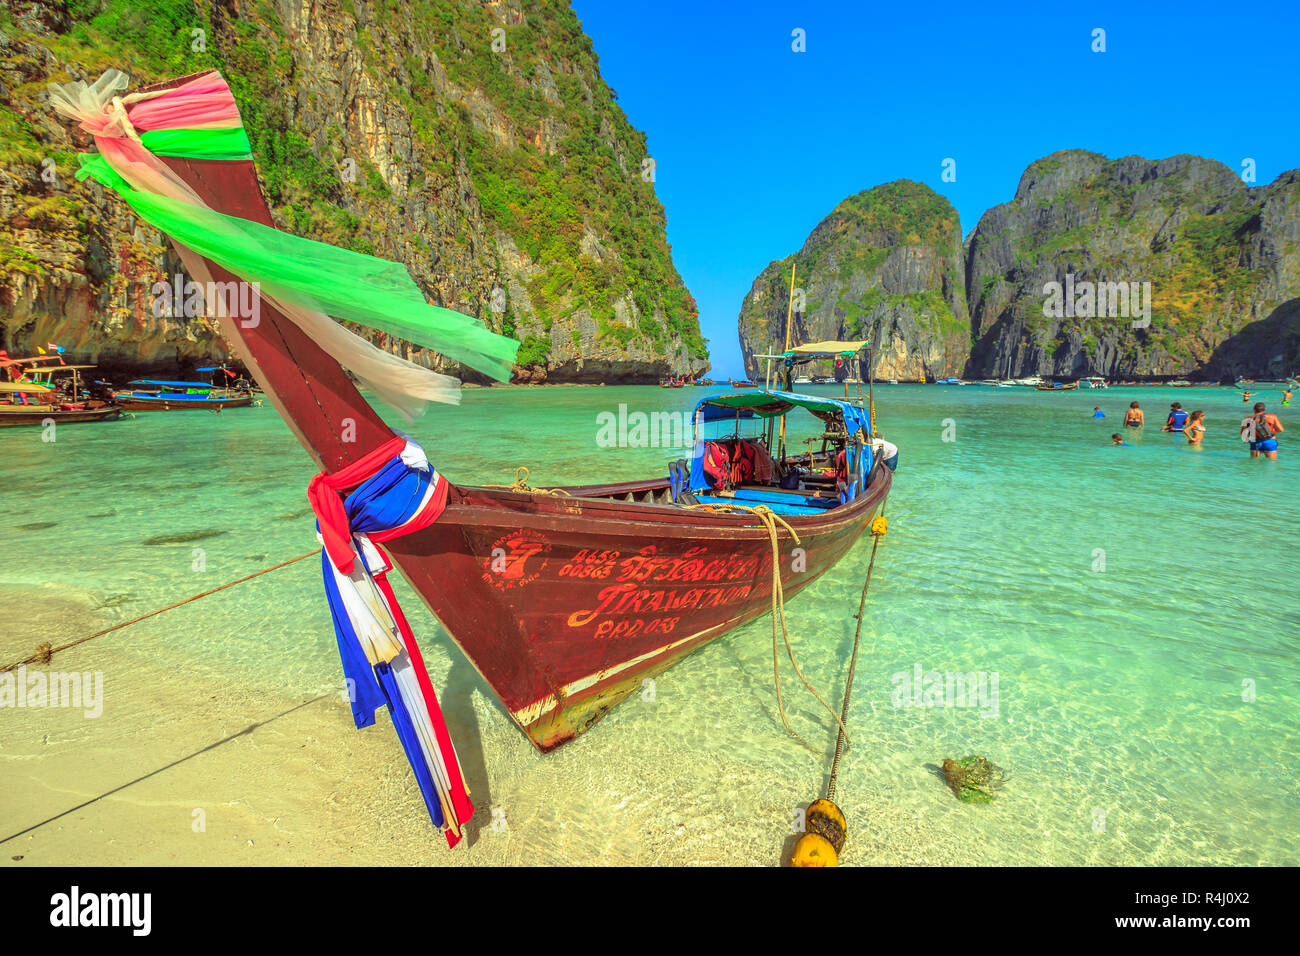 Maya Bay, Phi Phi Leh, Tailandia - Diciembre 31, 2015:popular playa celestial Maya Bay en Ko Phi Phi Leh con coloridos botes de cola larga y colinas de piedra caliza en el fondo. Islas tailandesas en el Mar de Andaman. Foto de stock